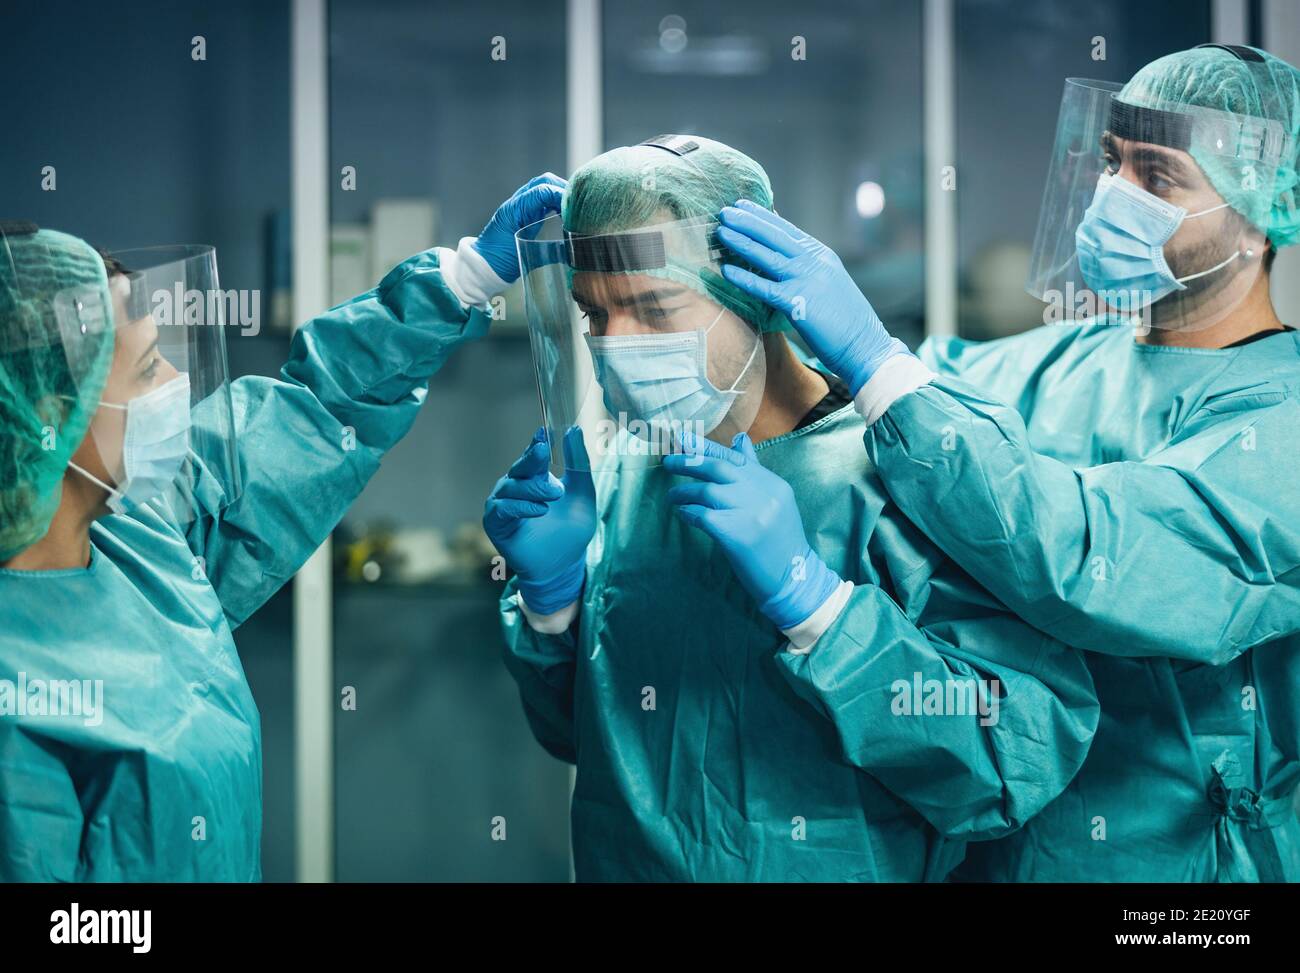 Ärzte tragen psa Ausrüstung Gesicht chirurgische Maske und Visier kämpfen Gegen Corona-Virus Ausbruch - Gesundheitswesen und medizinische Mitarbeiter Konzept Stockfoto